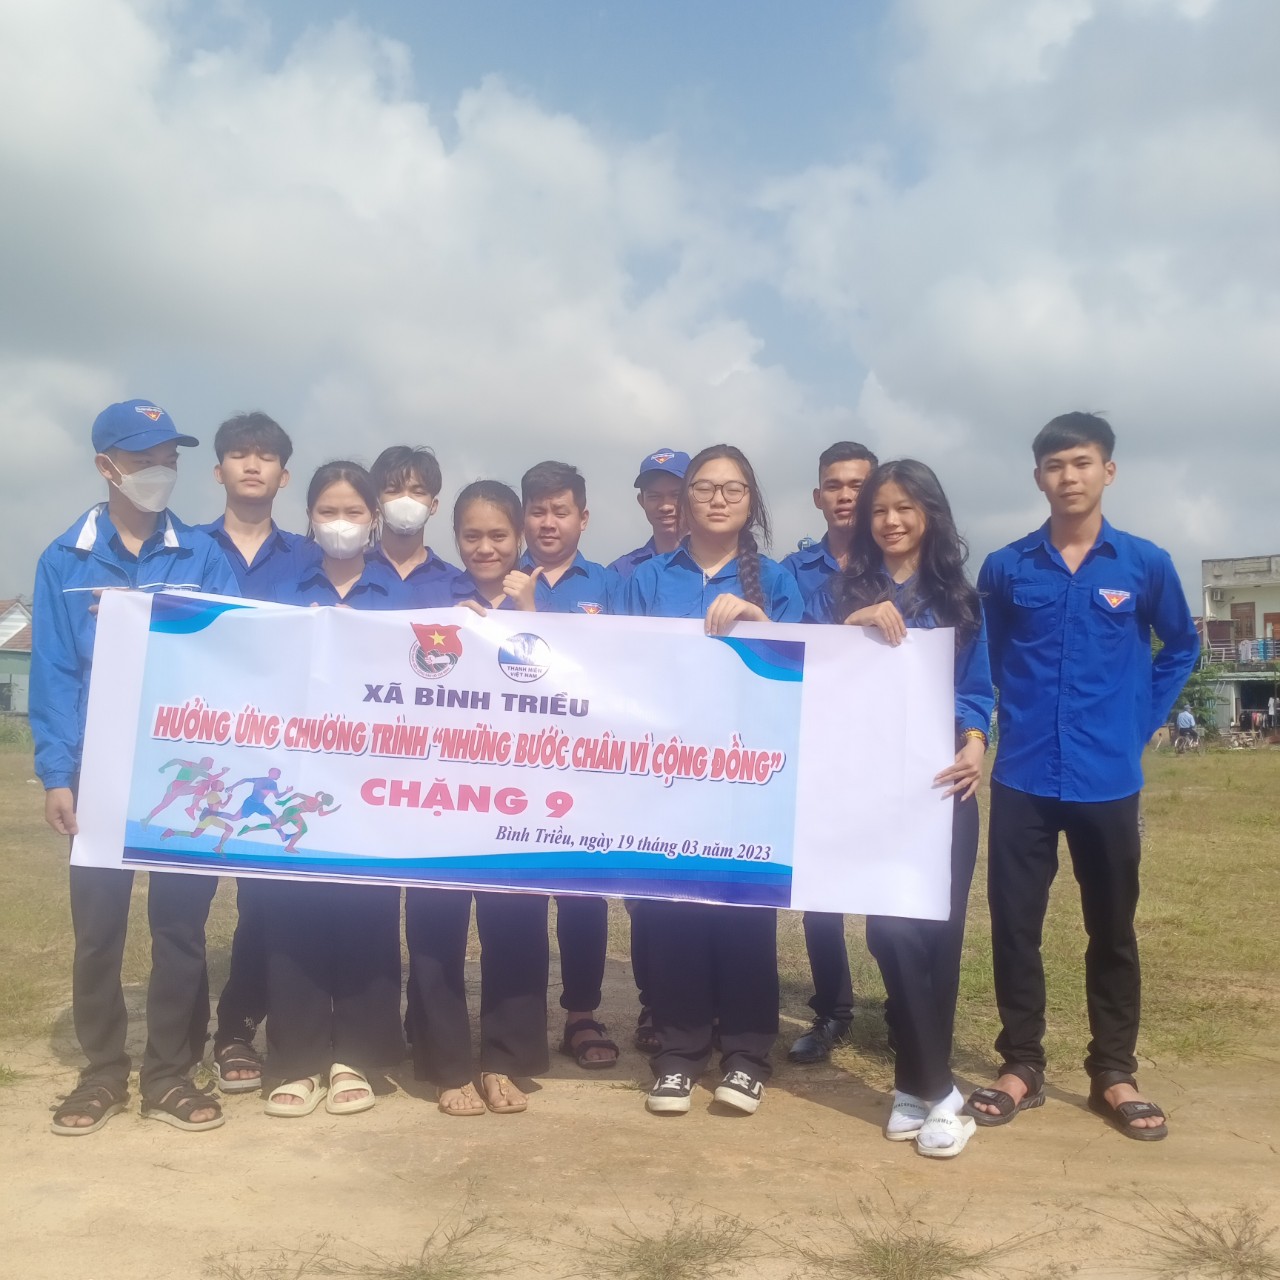 Tuổi trẻ xã Bình Triều hưởng ứng Chương trình "Những bước chân vì cộng đồng" Chặng 9